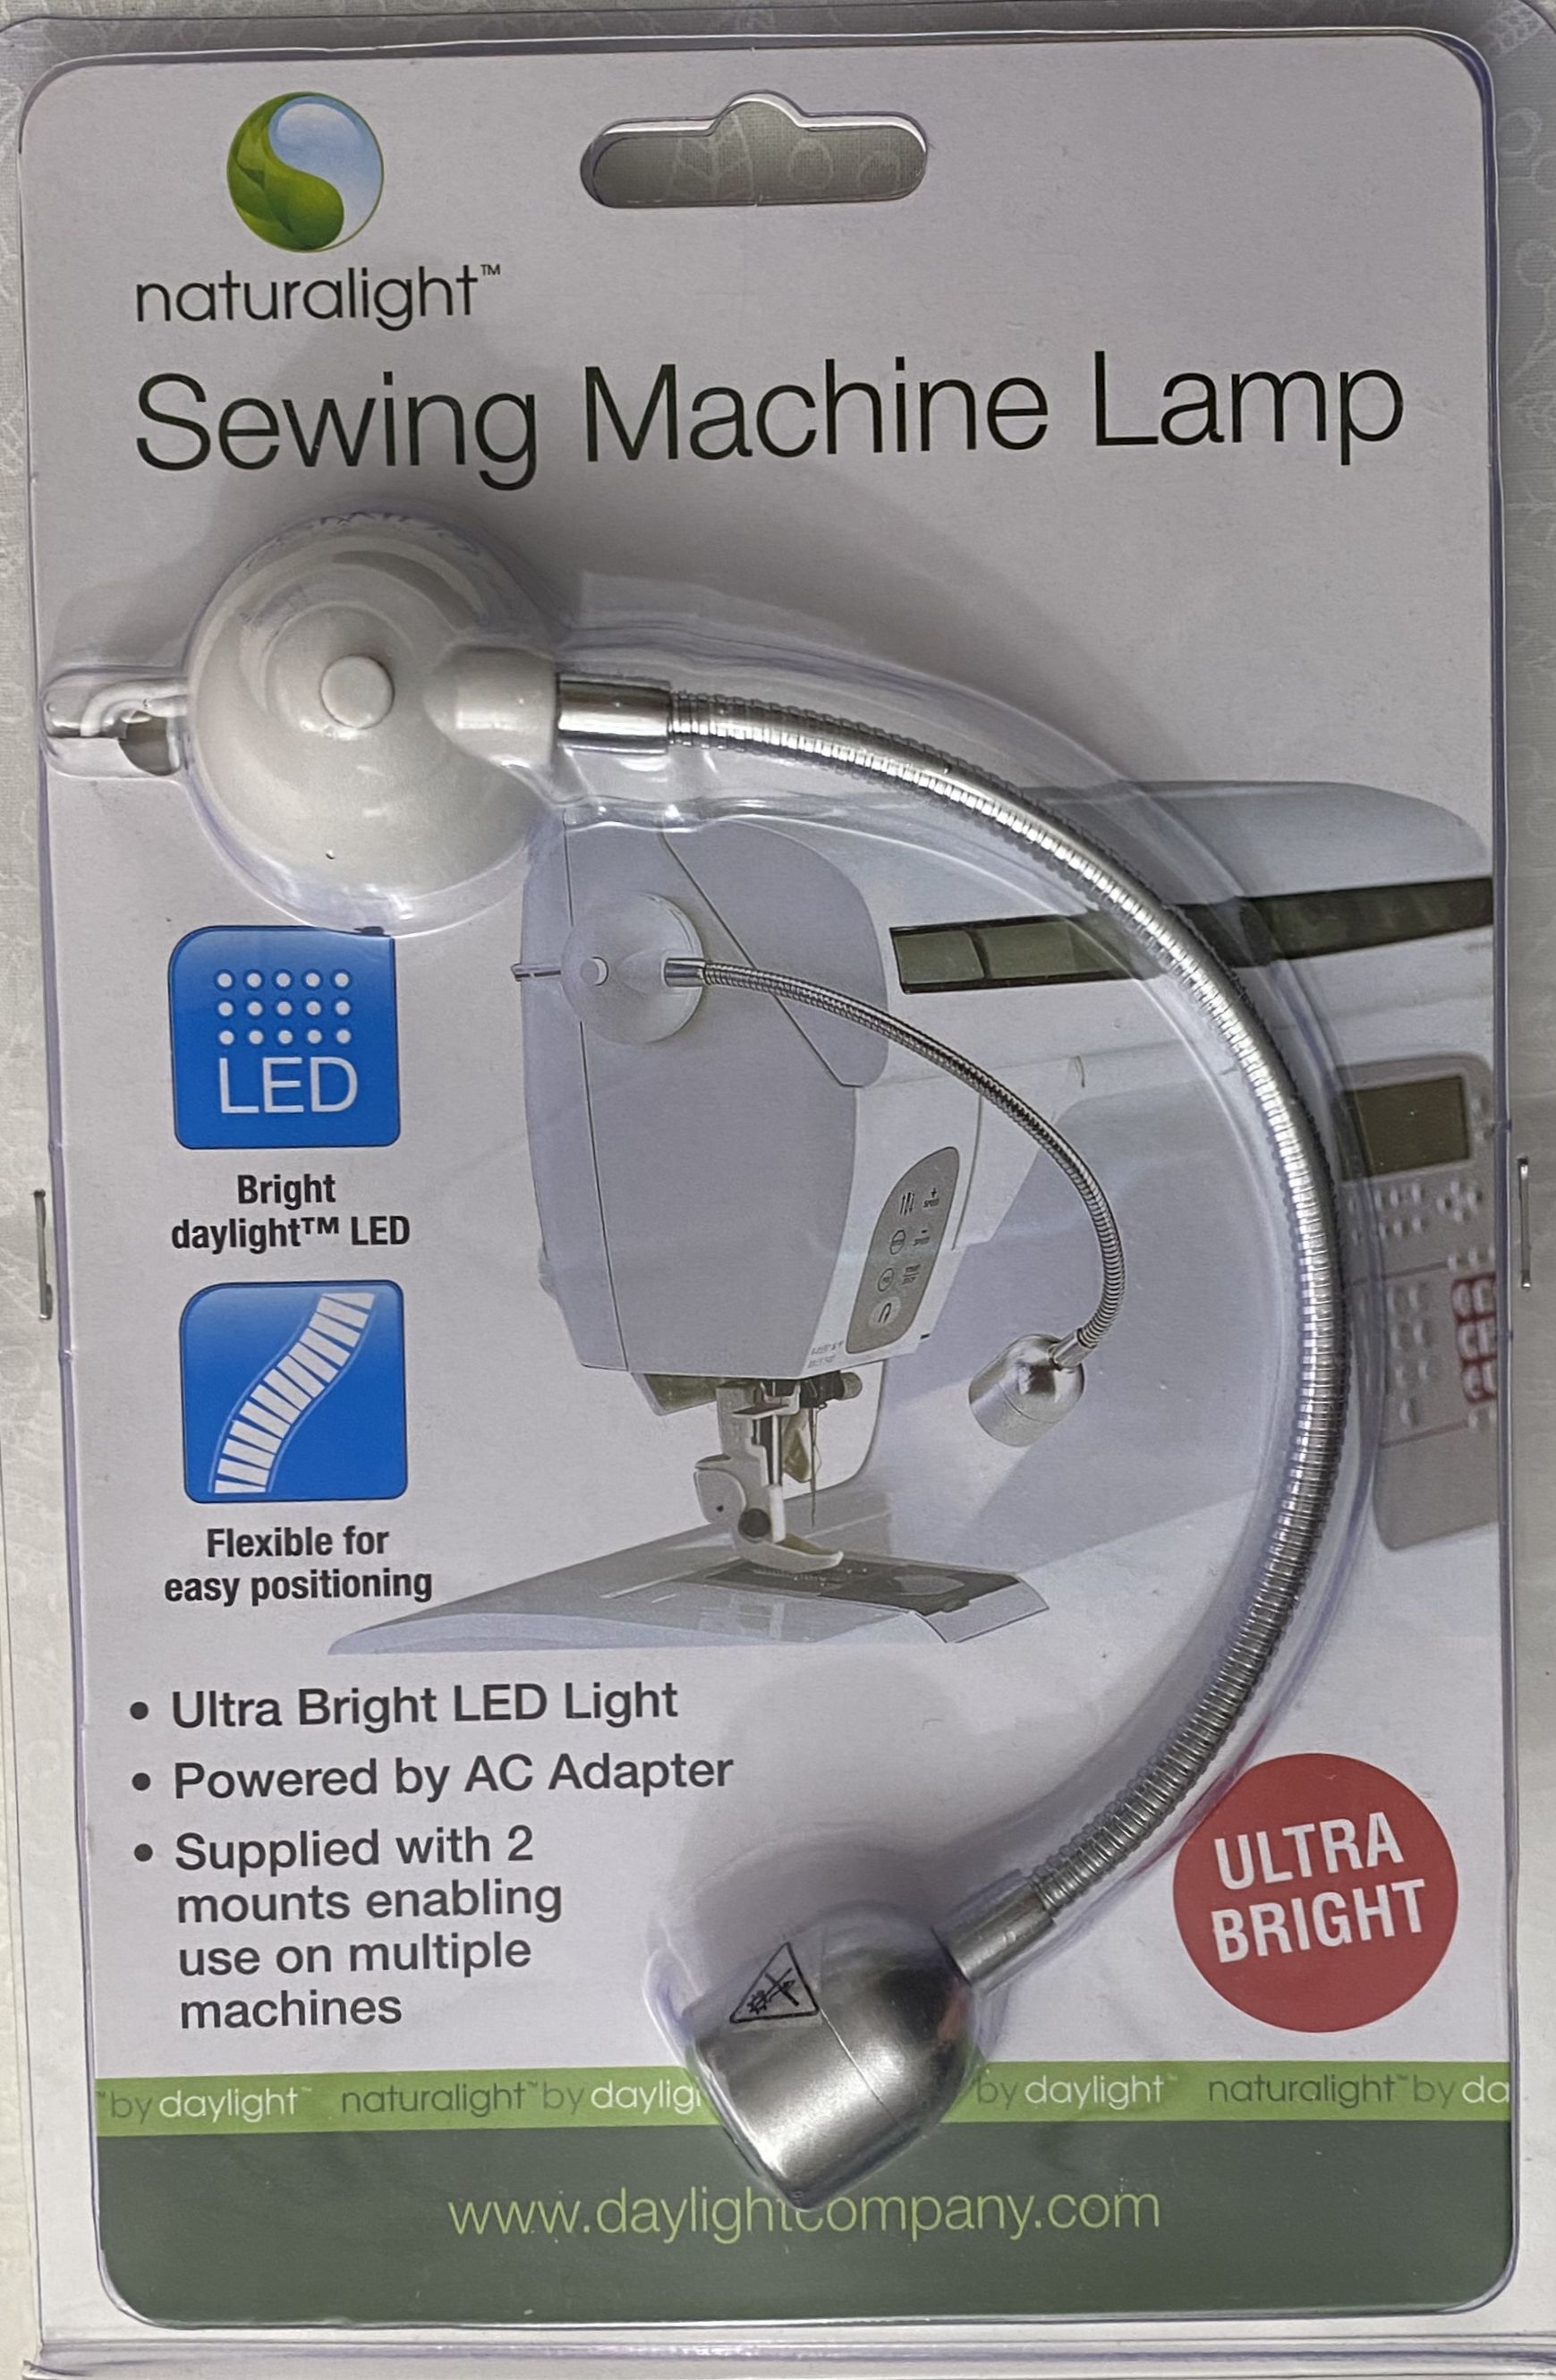 The Daylight Company Sewing Machine Lamp